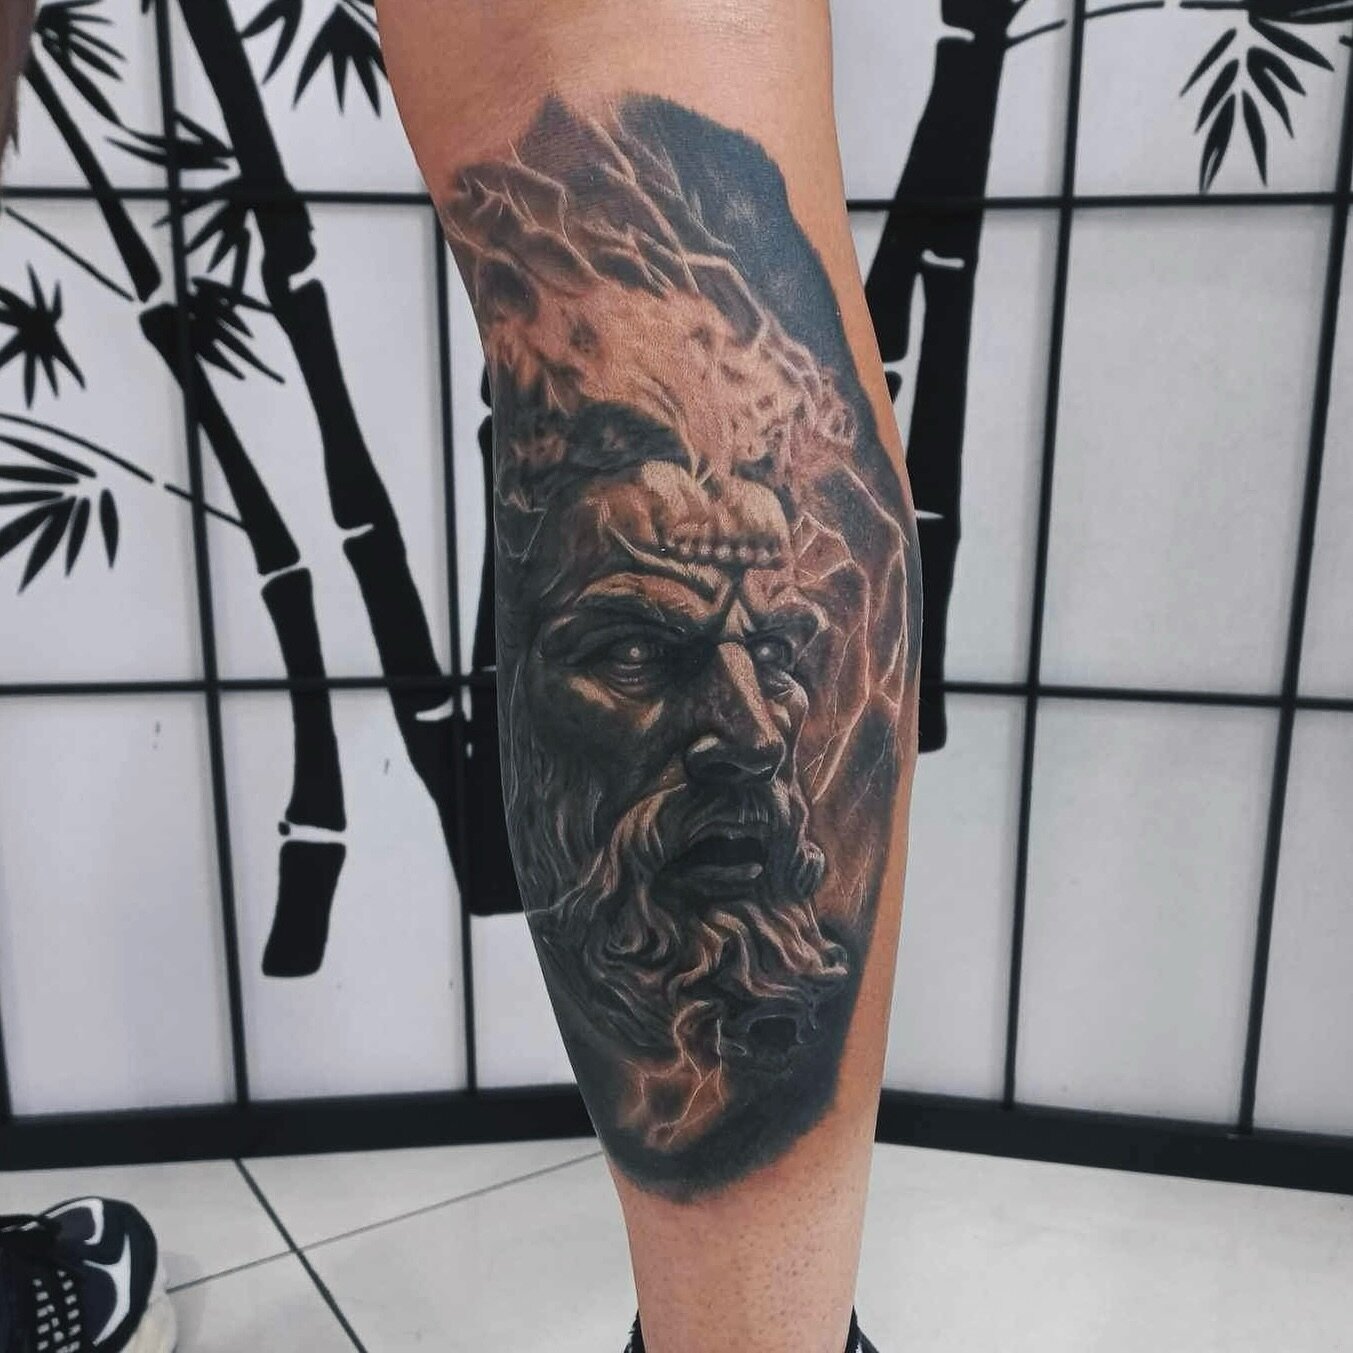 Unreal Greek God realism piece done by Luke ⚡️ | @jellybutton_tattoo 

#squiresink #goldcoast #2024 #surfersparadise #tattoo #tattooparlor #tattoostudio #ink #inked @pirattattoo #pirattattoomachine #tattooartist #inkart #inkdrawing #skills #tattooide